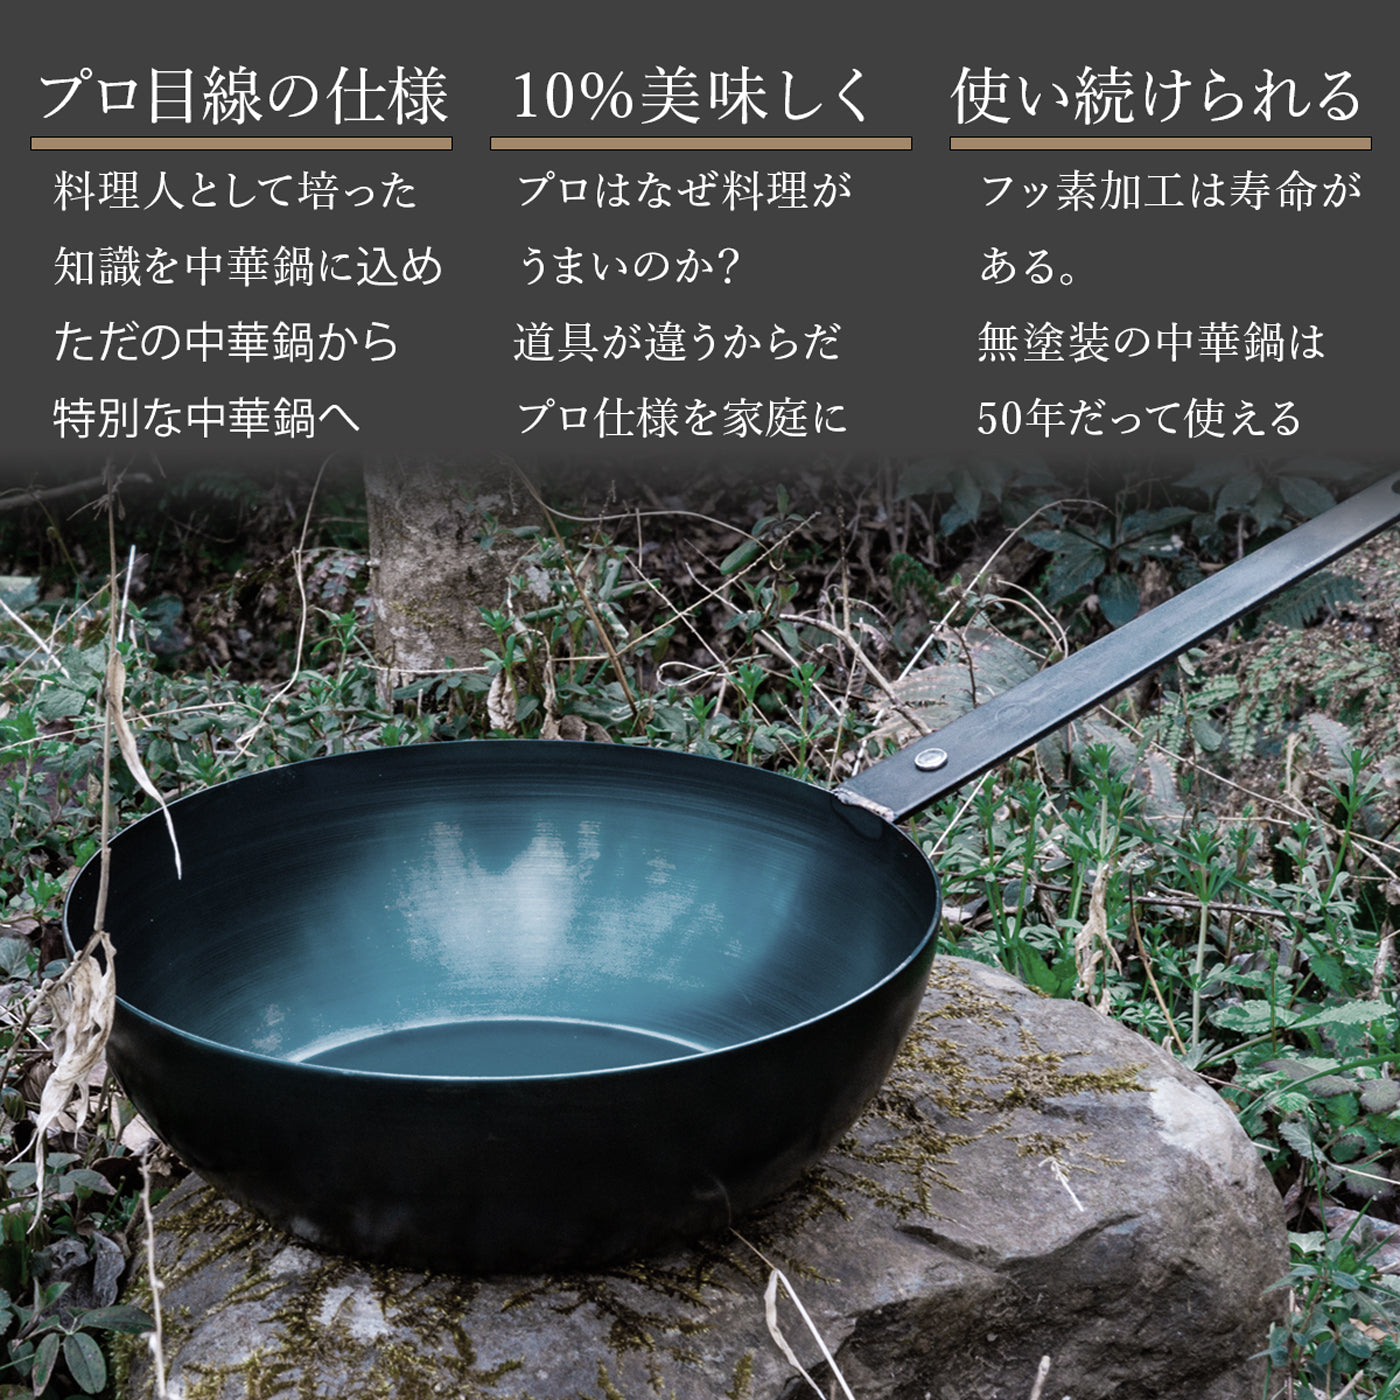 GOEN 背徳ぱん 24cm あらゆる料理に対応できる 中華鍋 – GOEN(ゴエン 